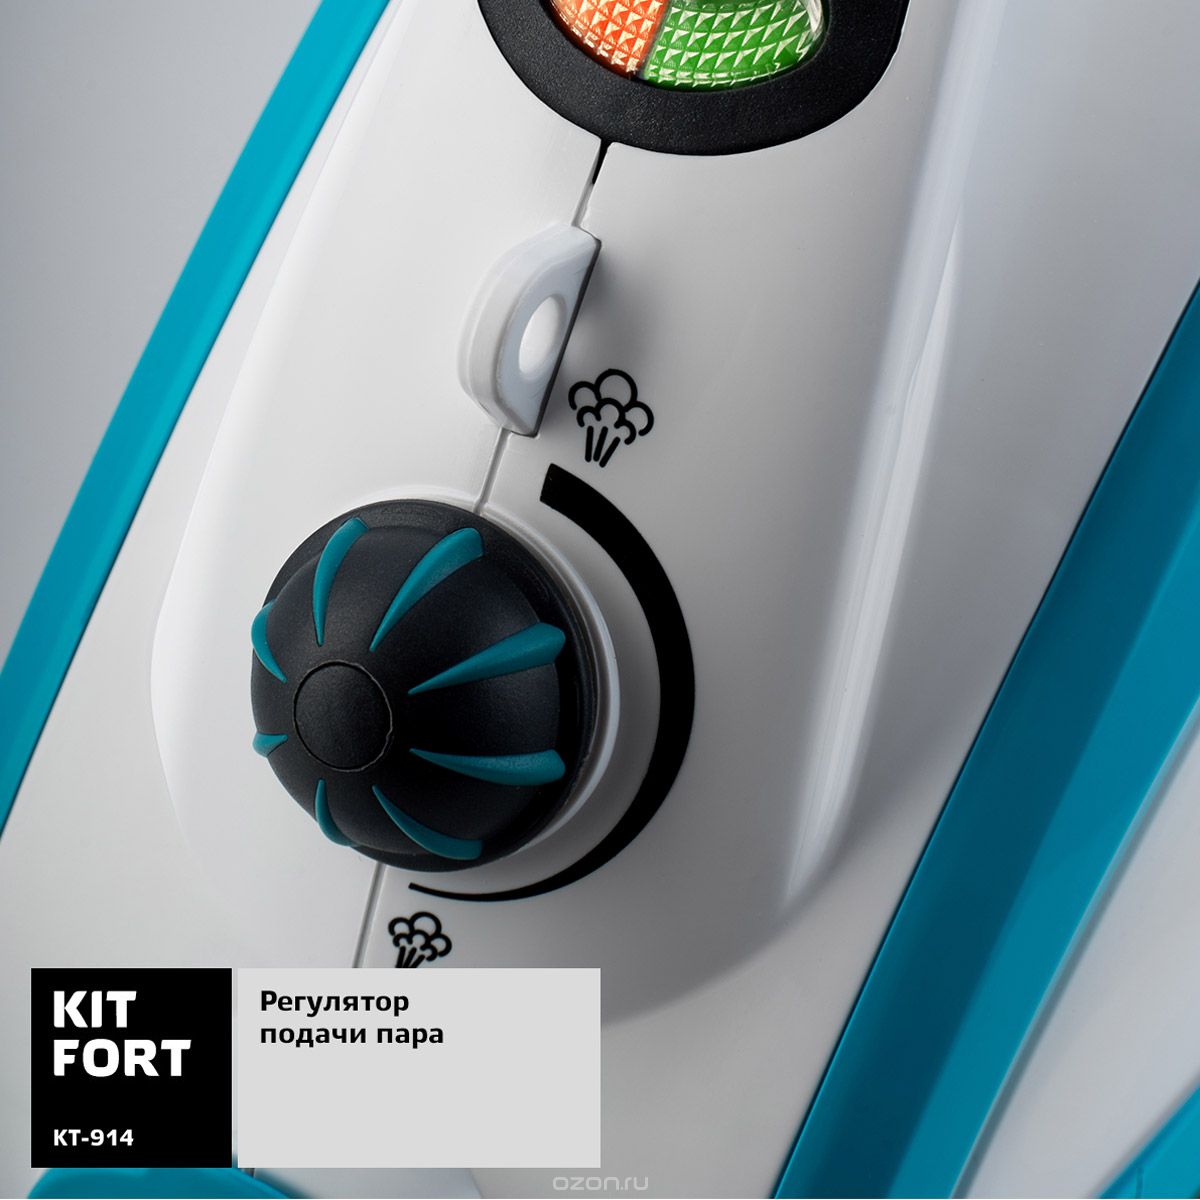  Kitfort -914, White Blue